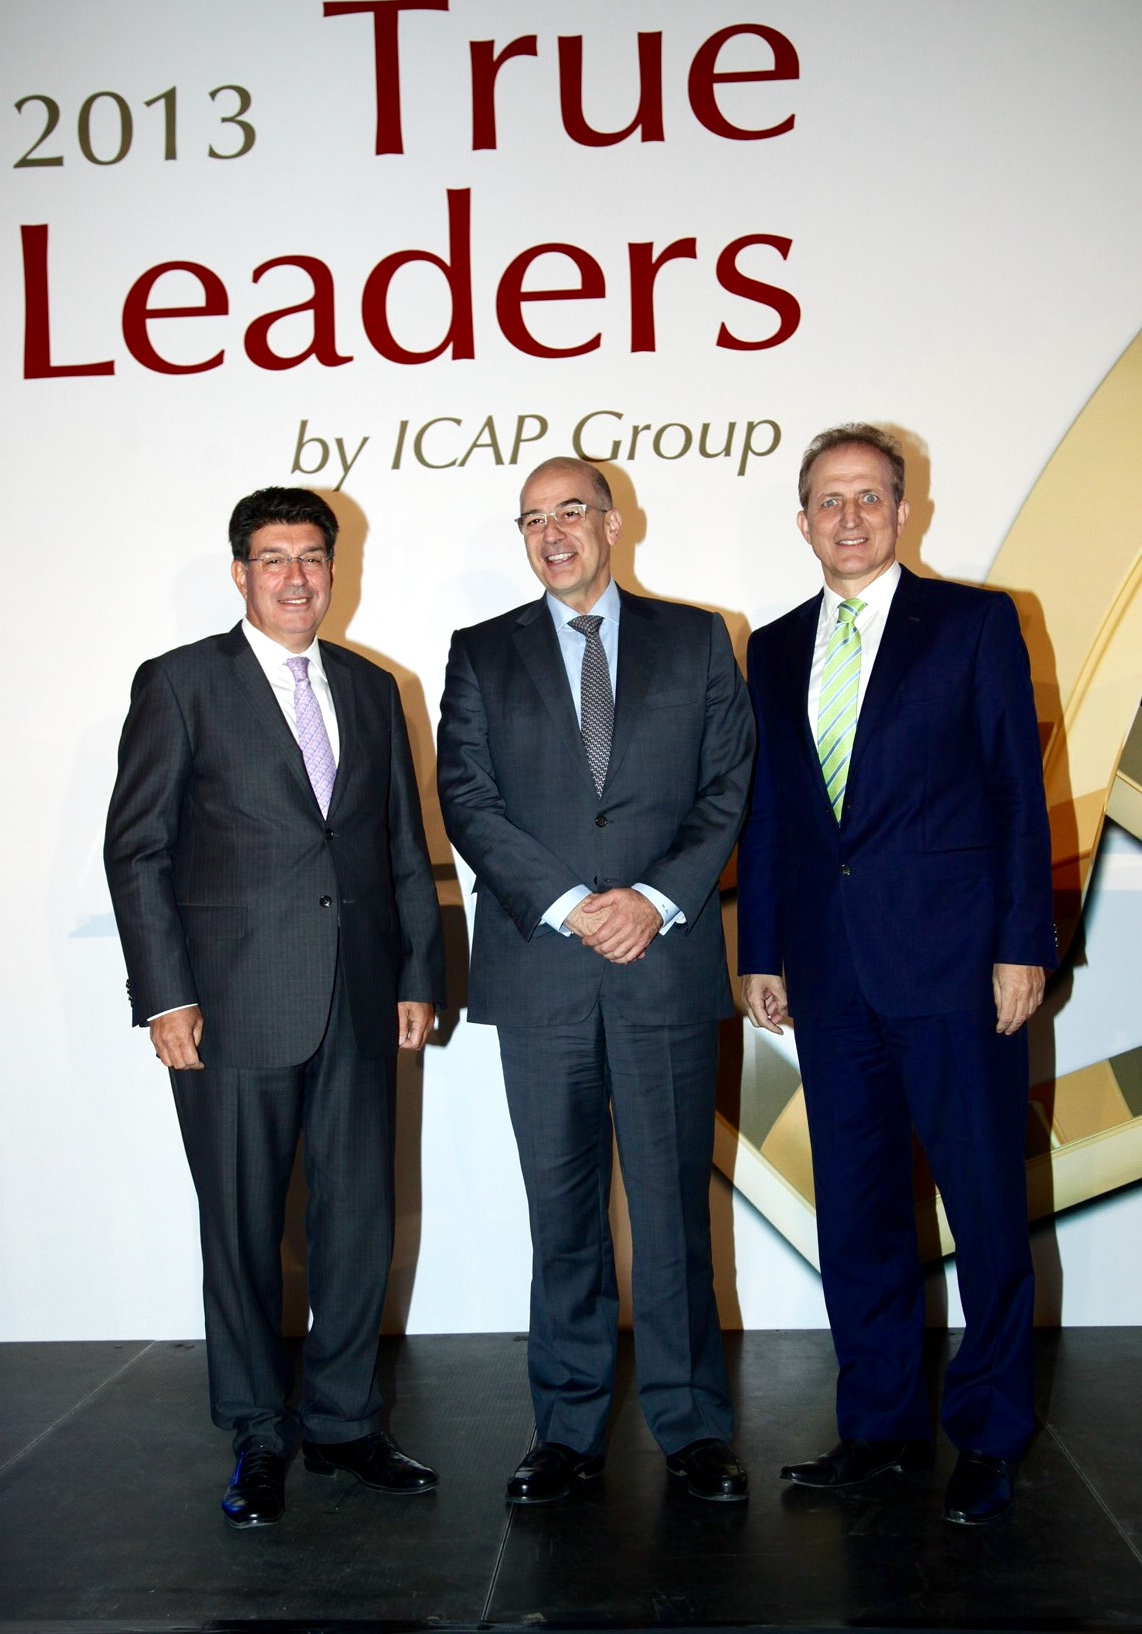 Η ICAP Group βράβευσε τις εταιρείες και ομίλους TRUE LEADERS 2013